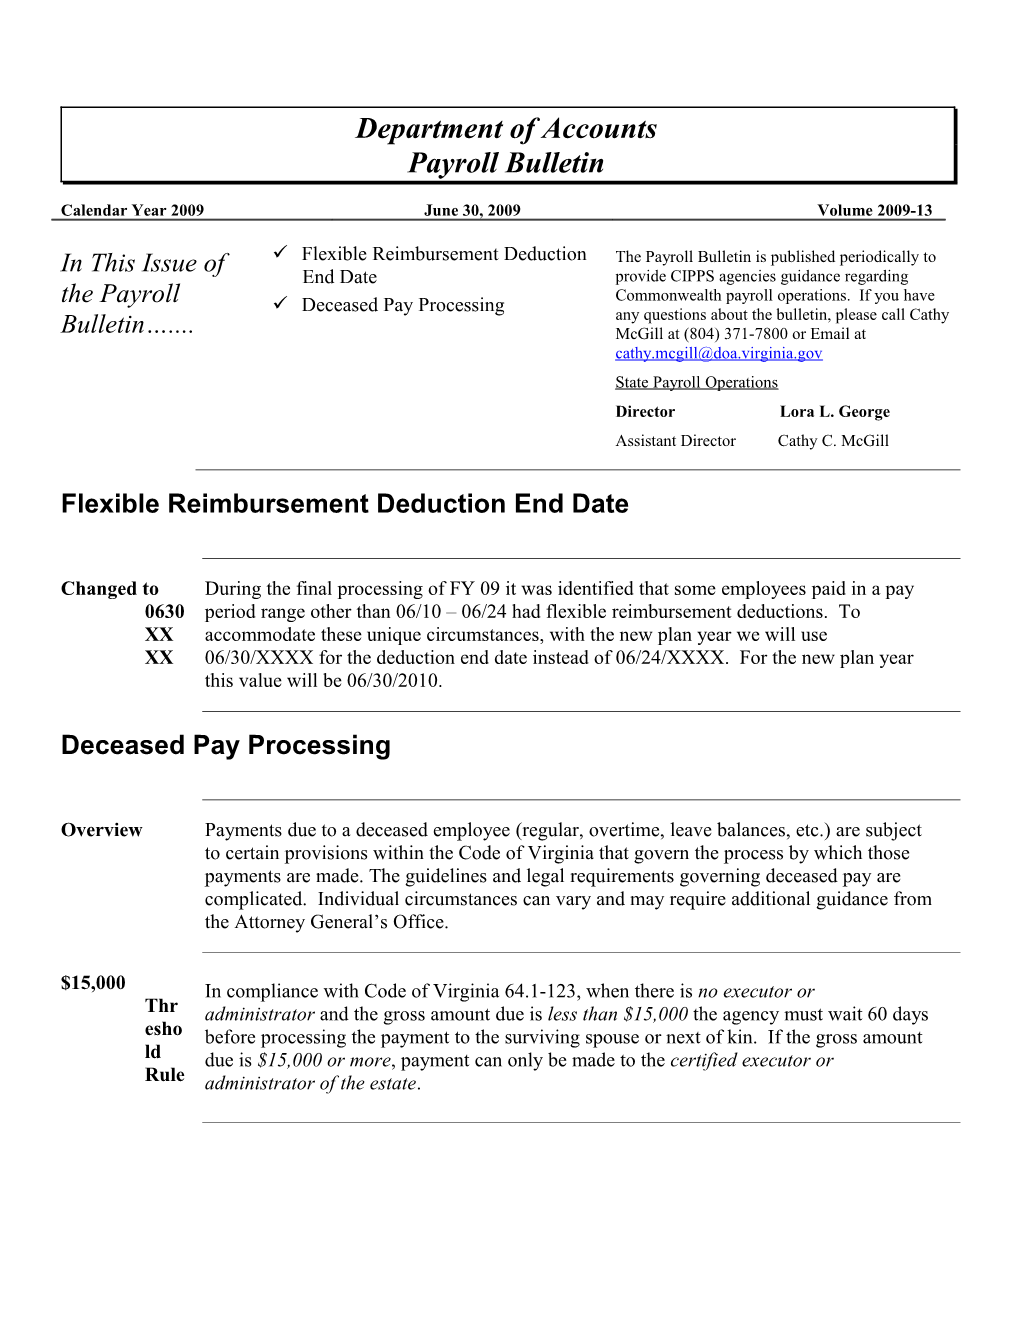 Flexible Reimbursement Deduction End Date